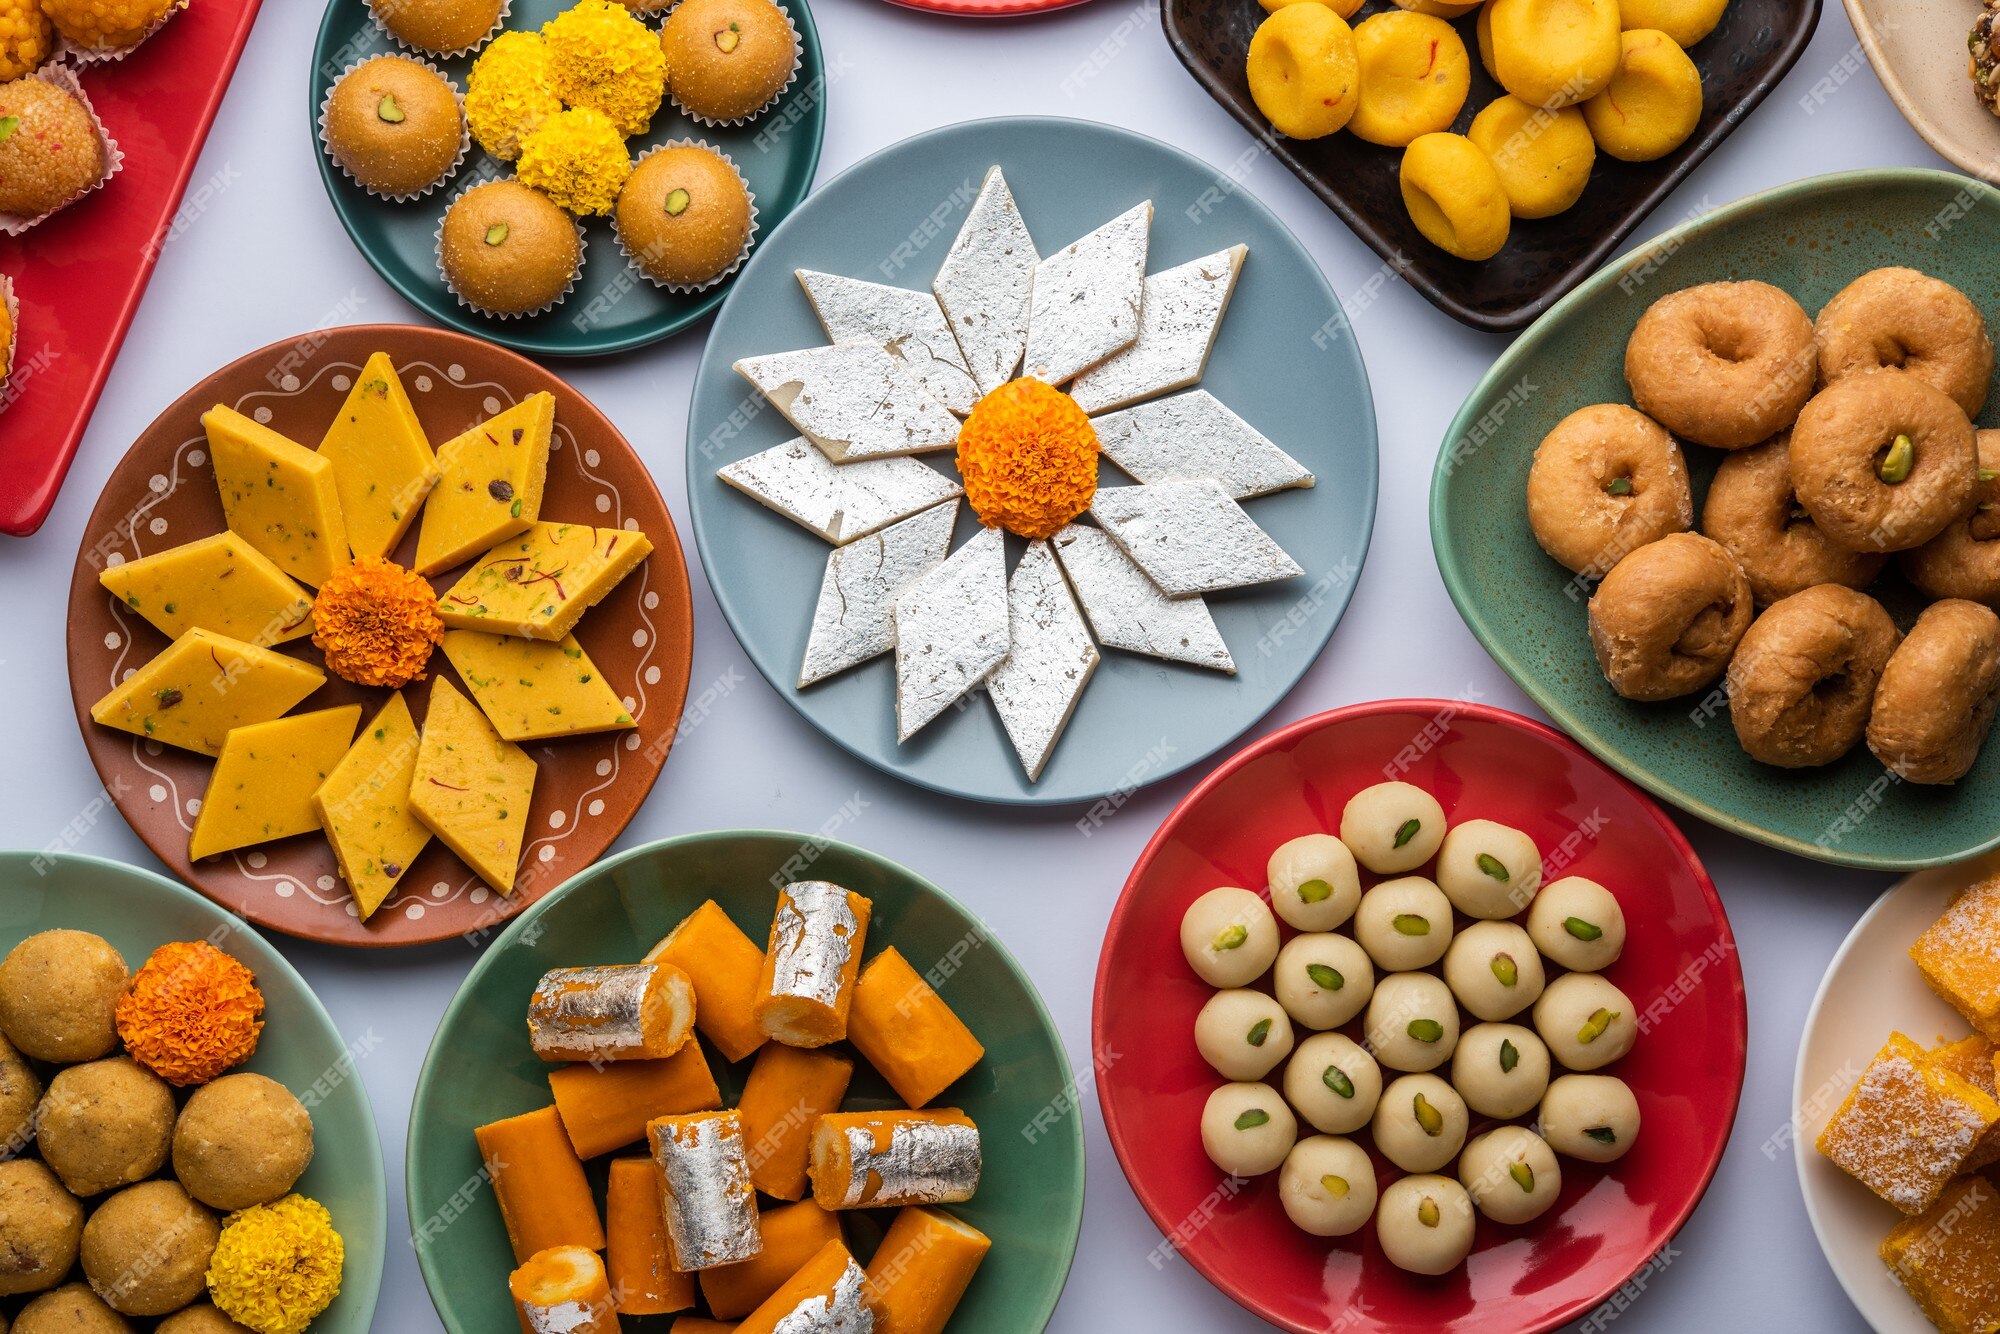 Diwali Sweets Images - Free Download on Freepik